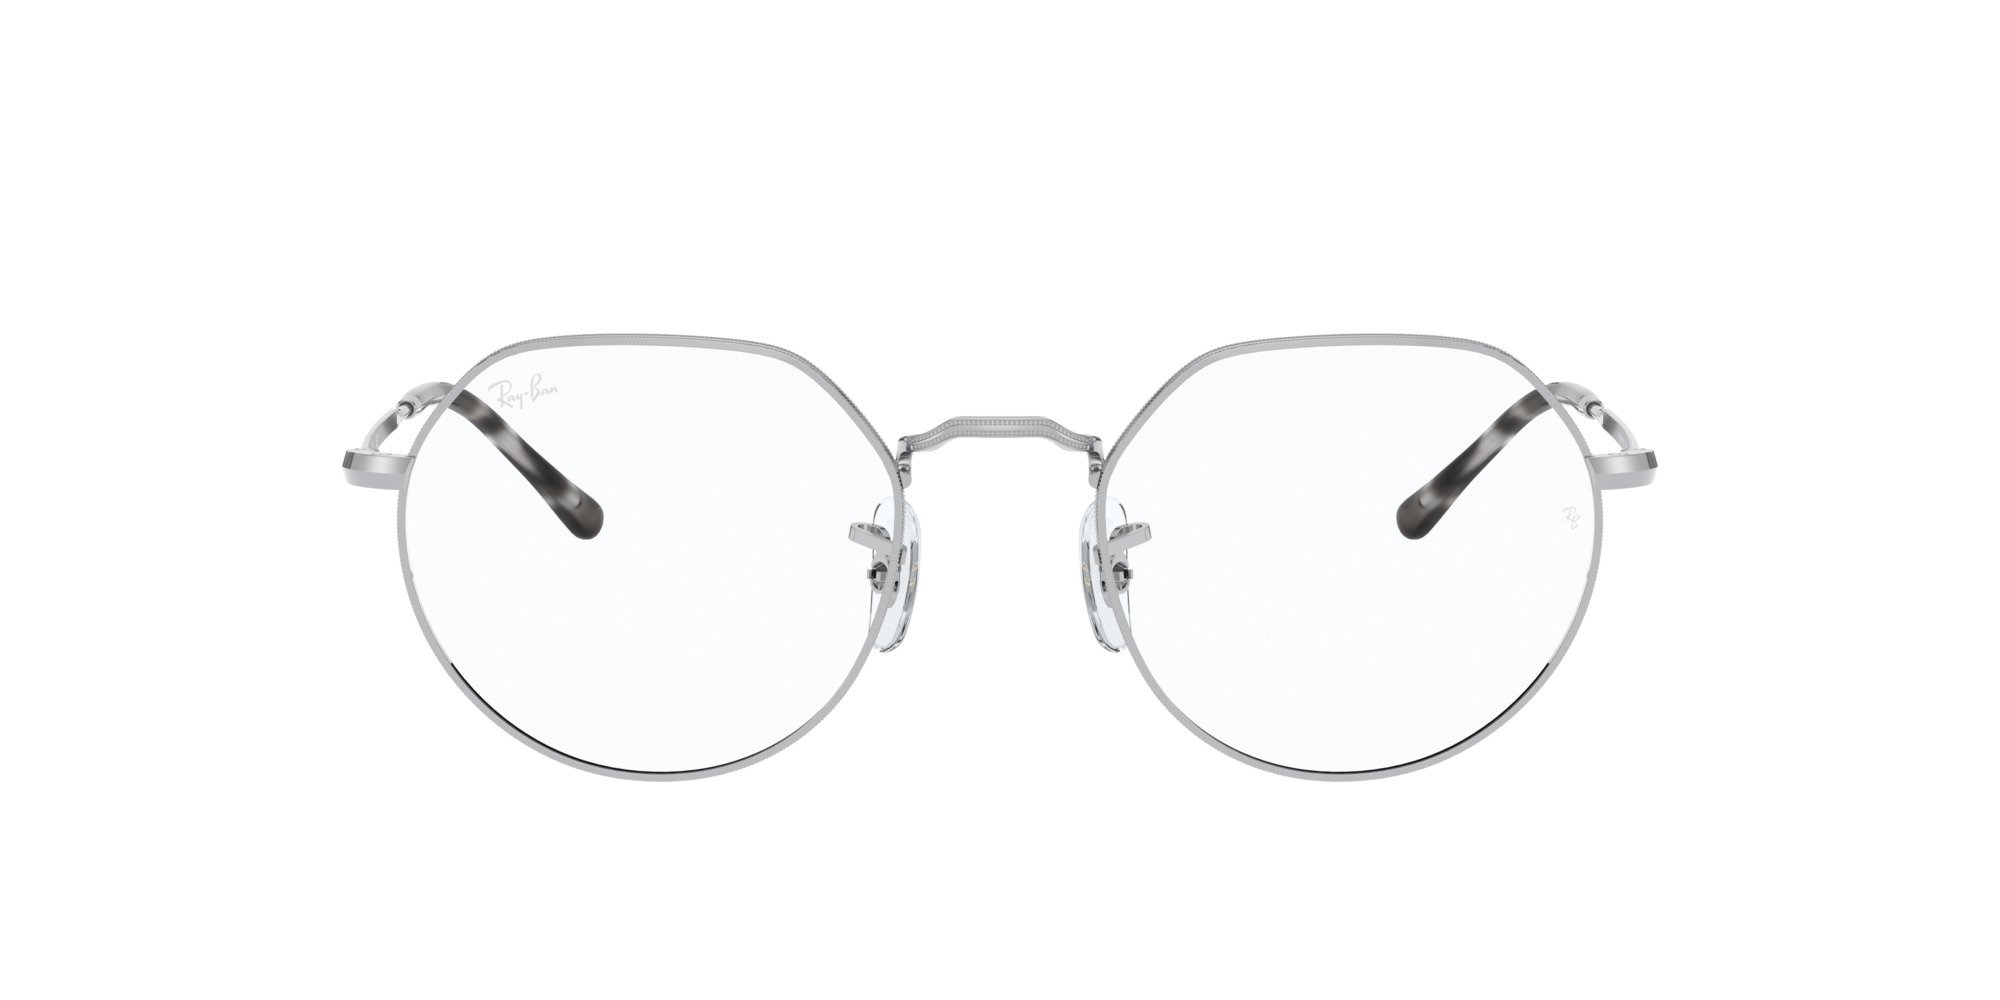 Das Bild zeigt die Korrektionsbrille RX6564 2501 von der Marke Ray Ban in Silber.